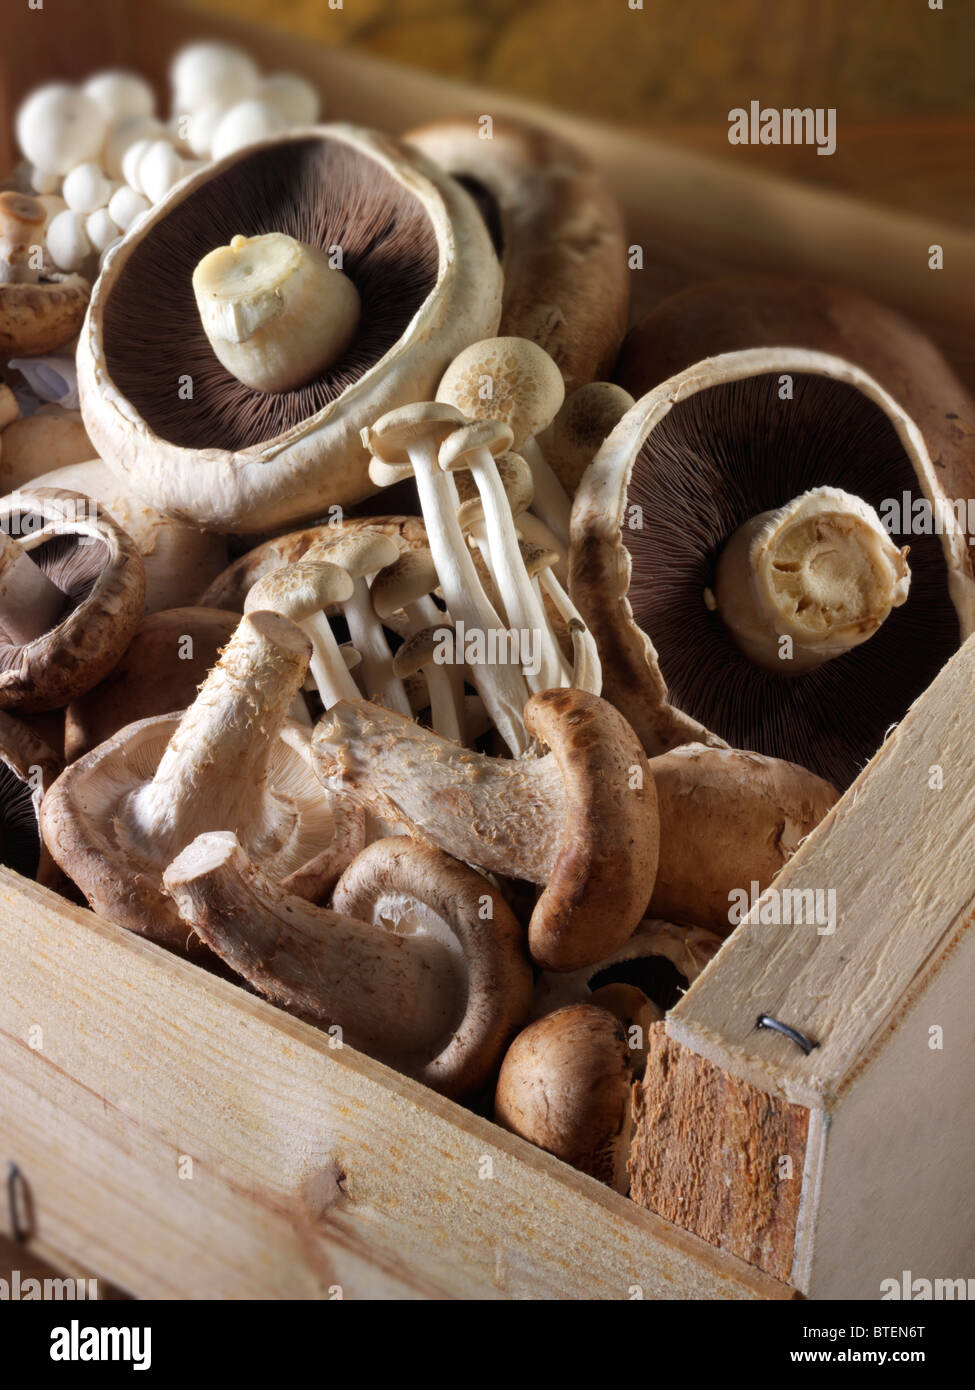 Champignons frais crus entiers cultivés dans une boîte de marché en bois. Banque D'Images